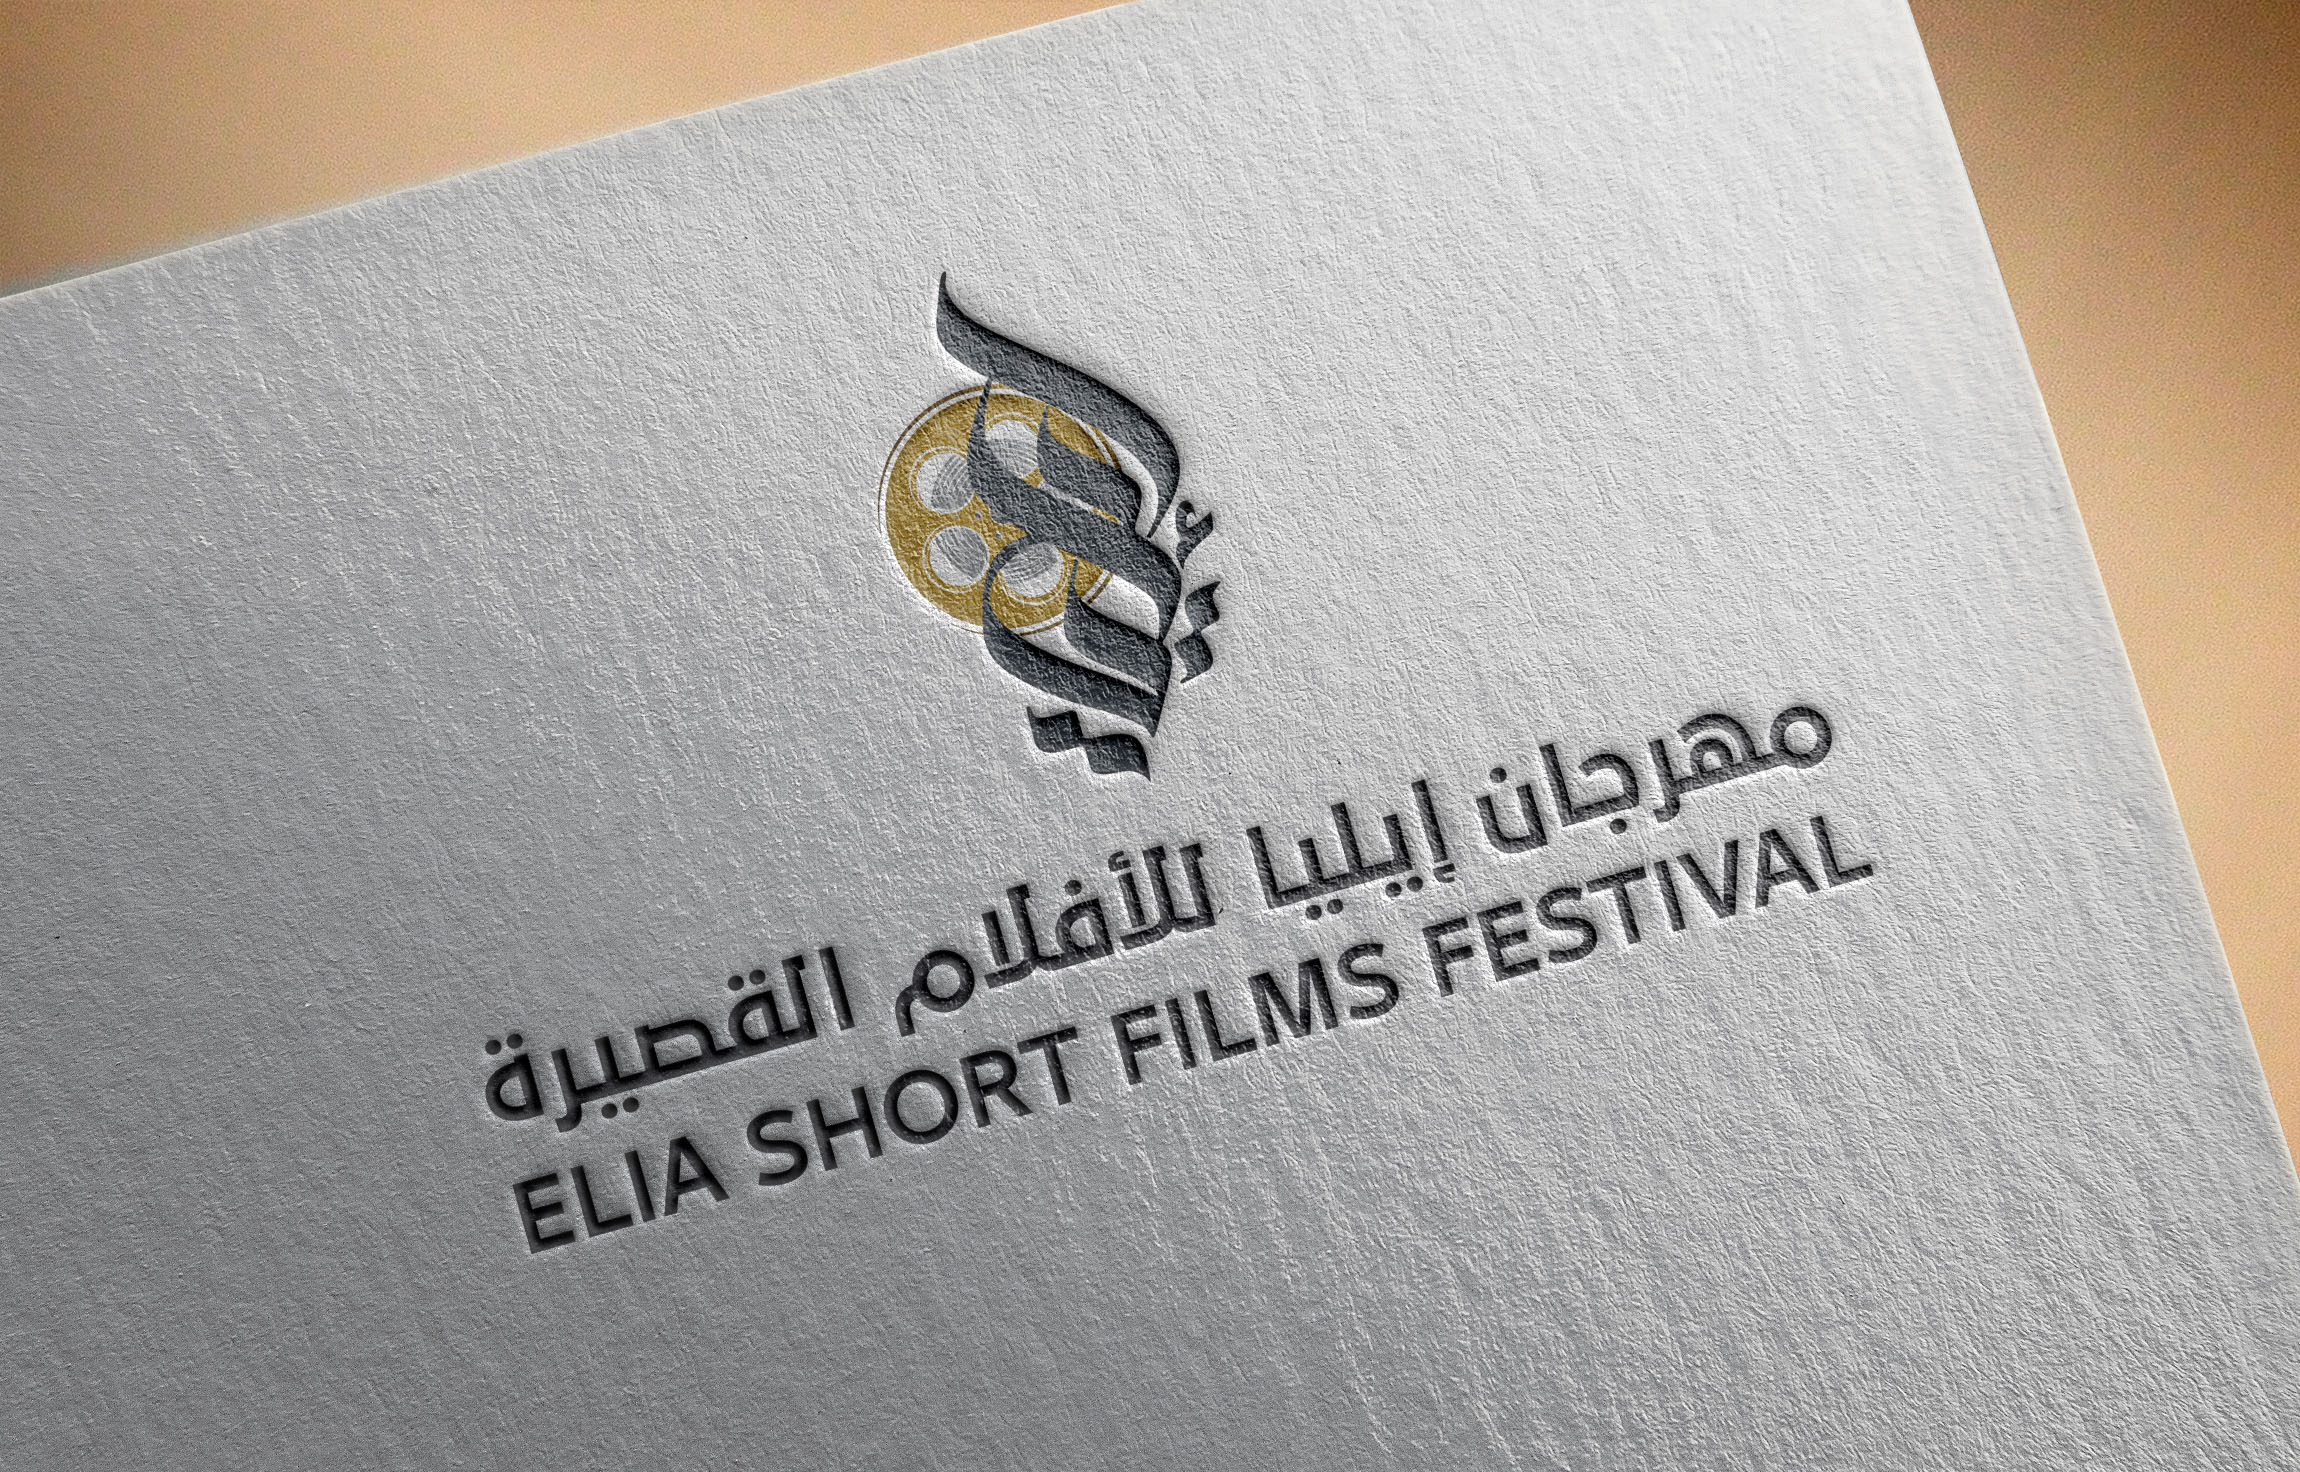 ELIA SHORT FILM FESTIVAL